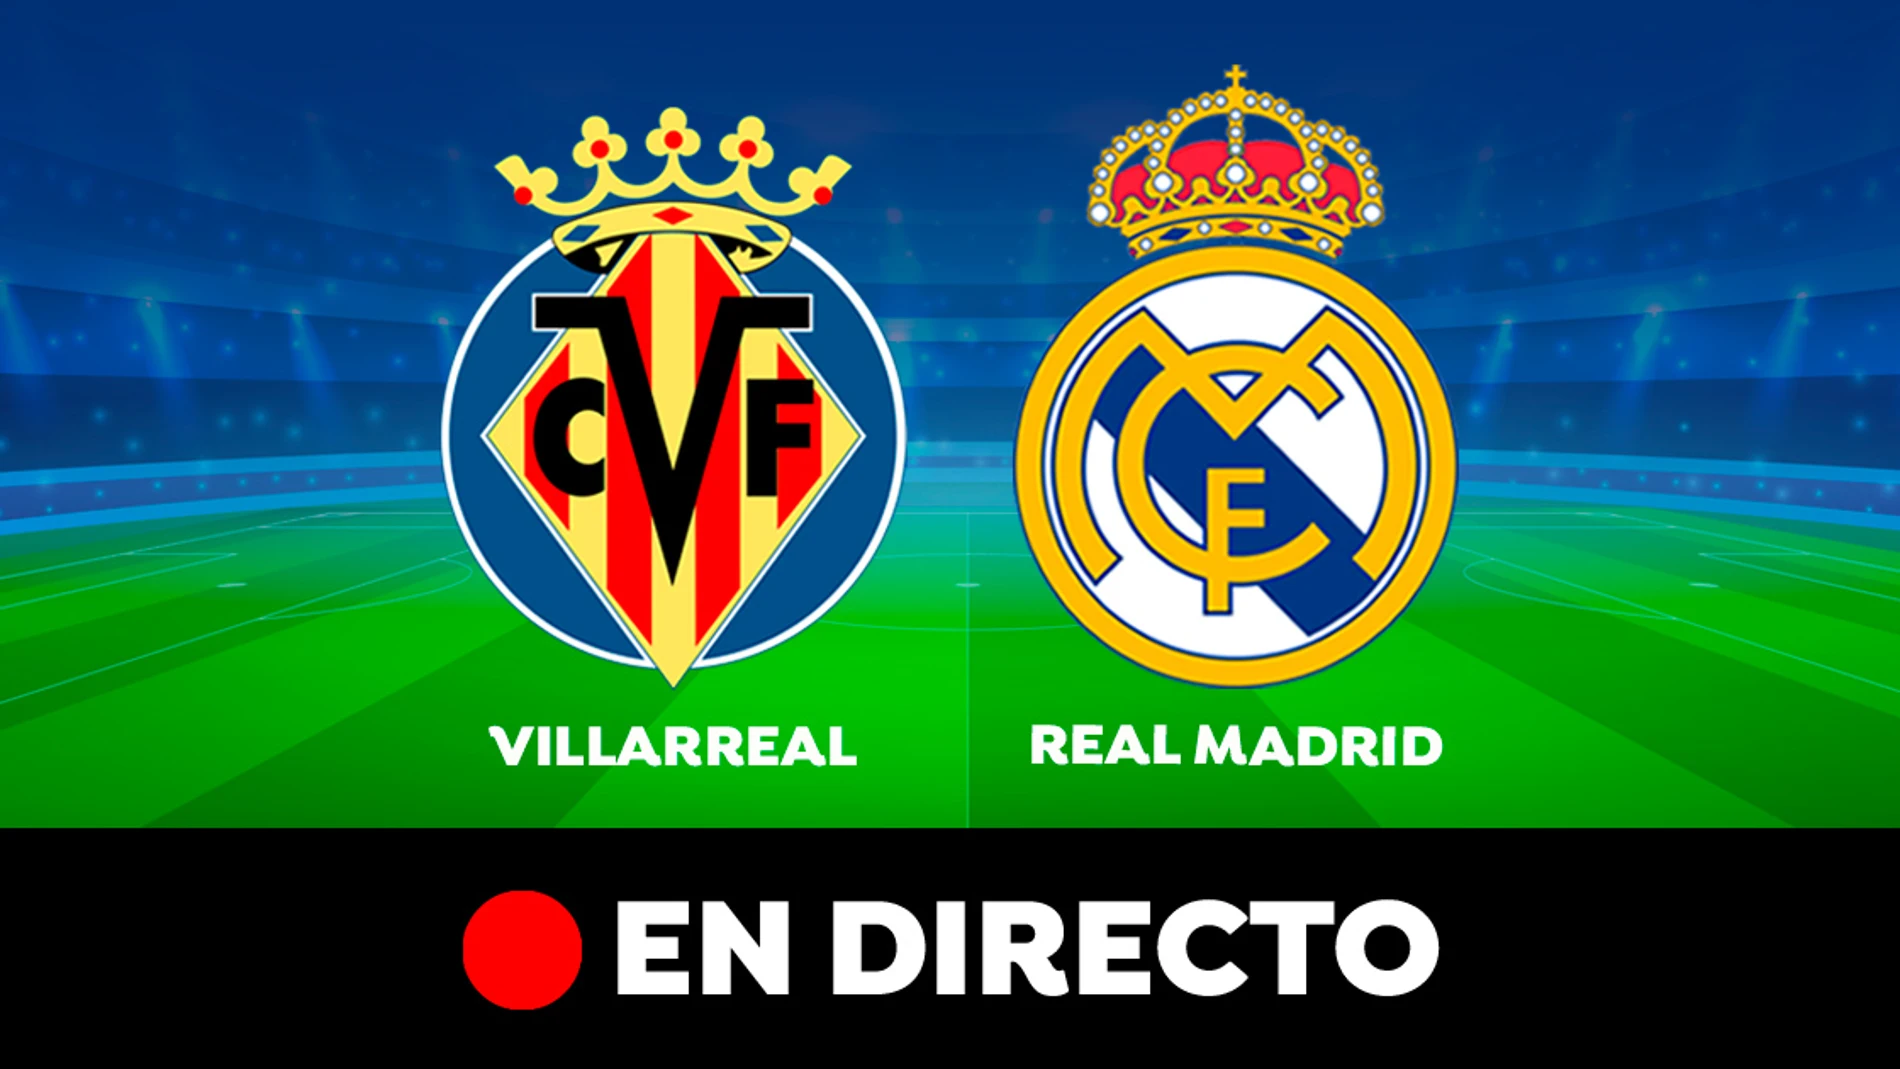 Villarreal vs Real Madrid DIRECTO: Resultado, goles partido de de la Liga hoy